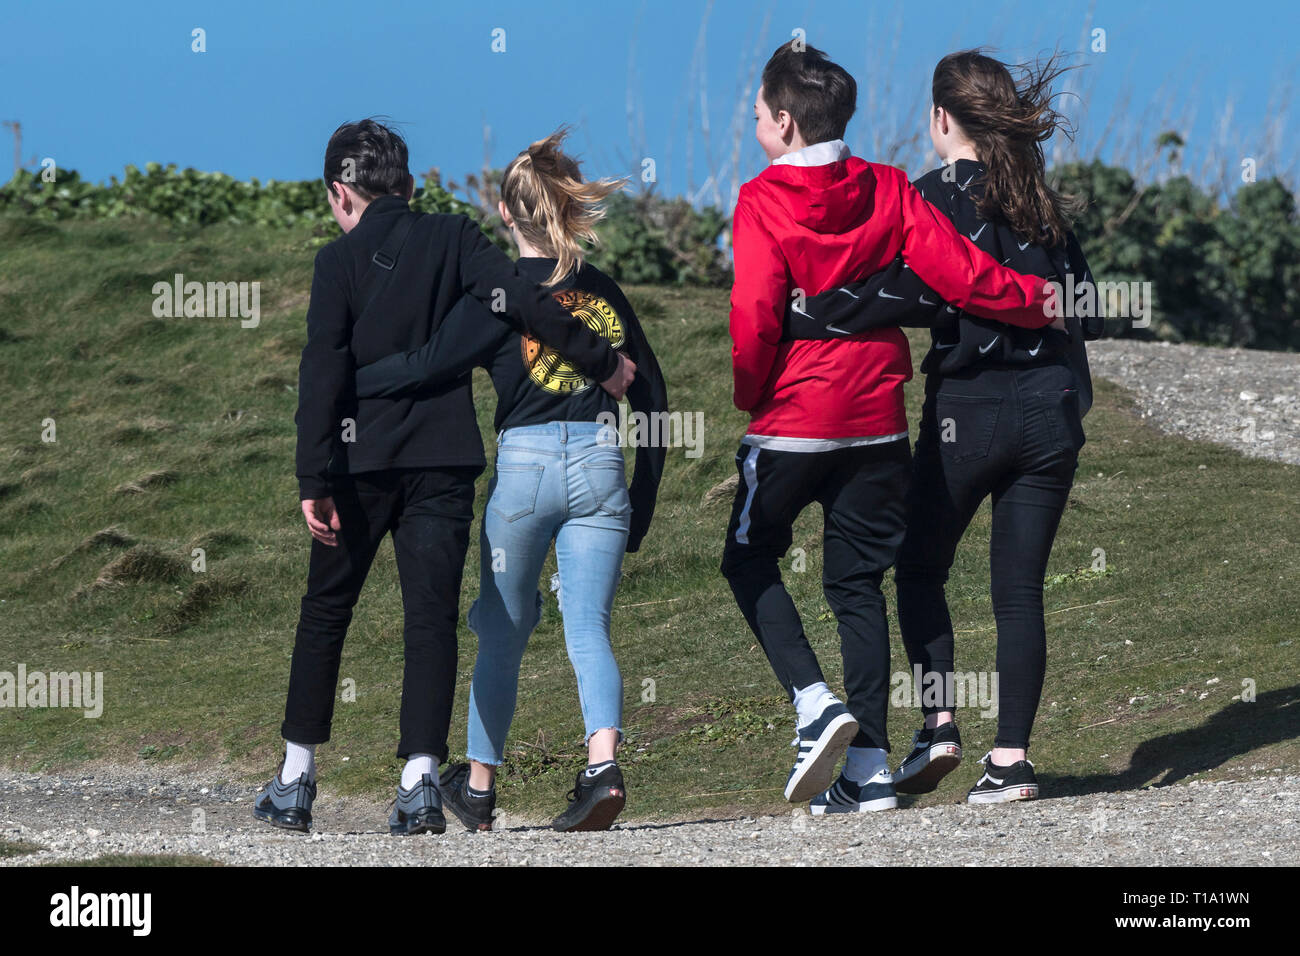 Los adolescentes con sus brazos alrededor de cada otros caminando por un sendero. Foto de stock